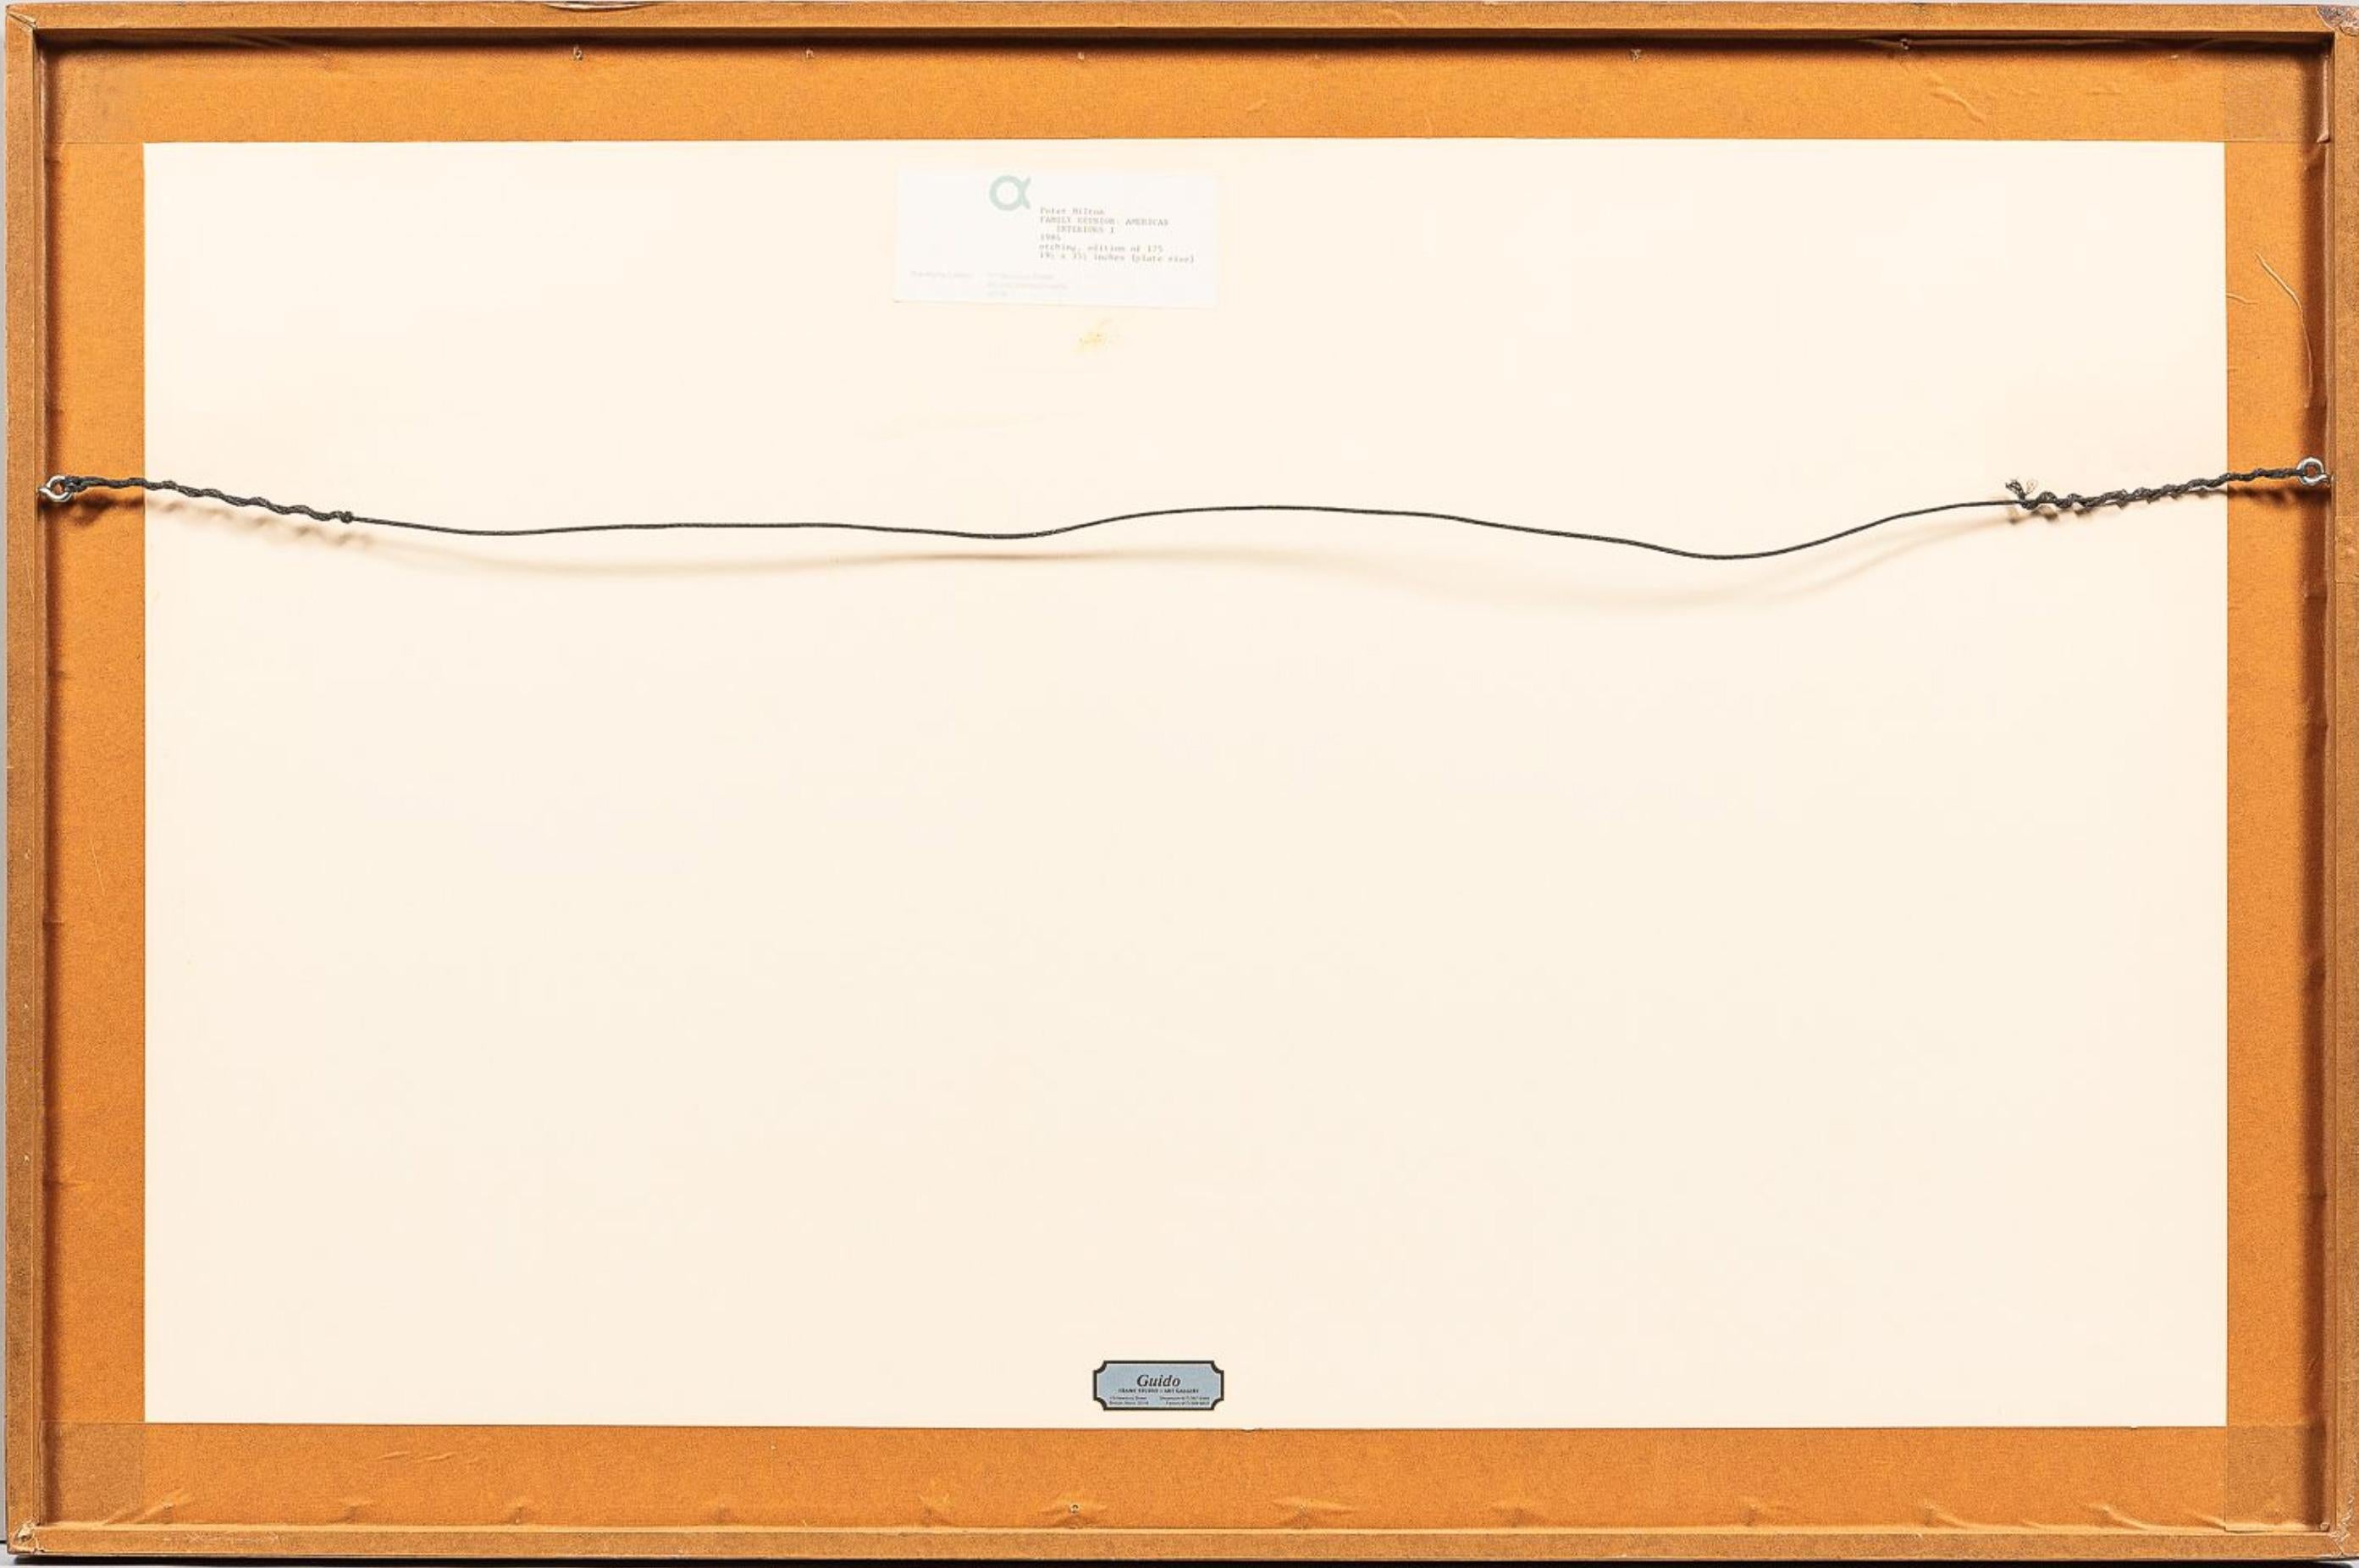 Innenräume I: Familienzusammenführung
1984

Radierung und Kupferstich mit Resistgrund auf BFK Rives Velin, 501 x 913 mm (20 x 36 Zoll), vollrandig. Signiert, betitelt, datiert und nummeriert 49/175 mit Bleistift im unteren Rand. In ausgezeichnetem